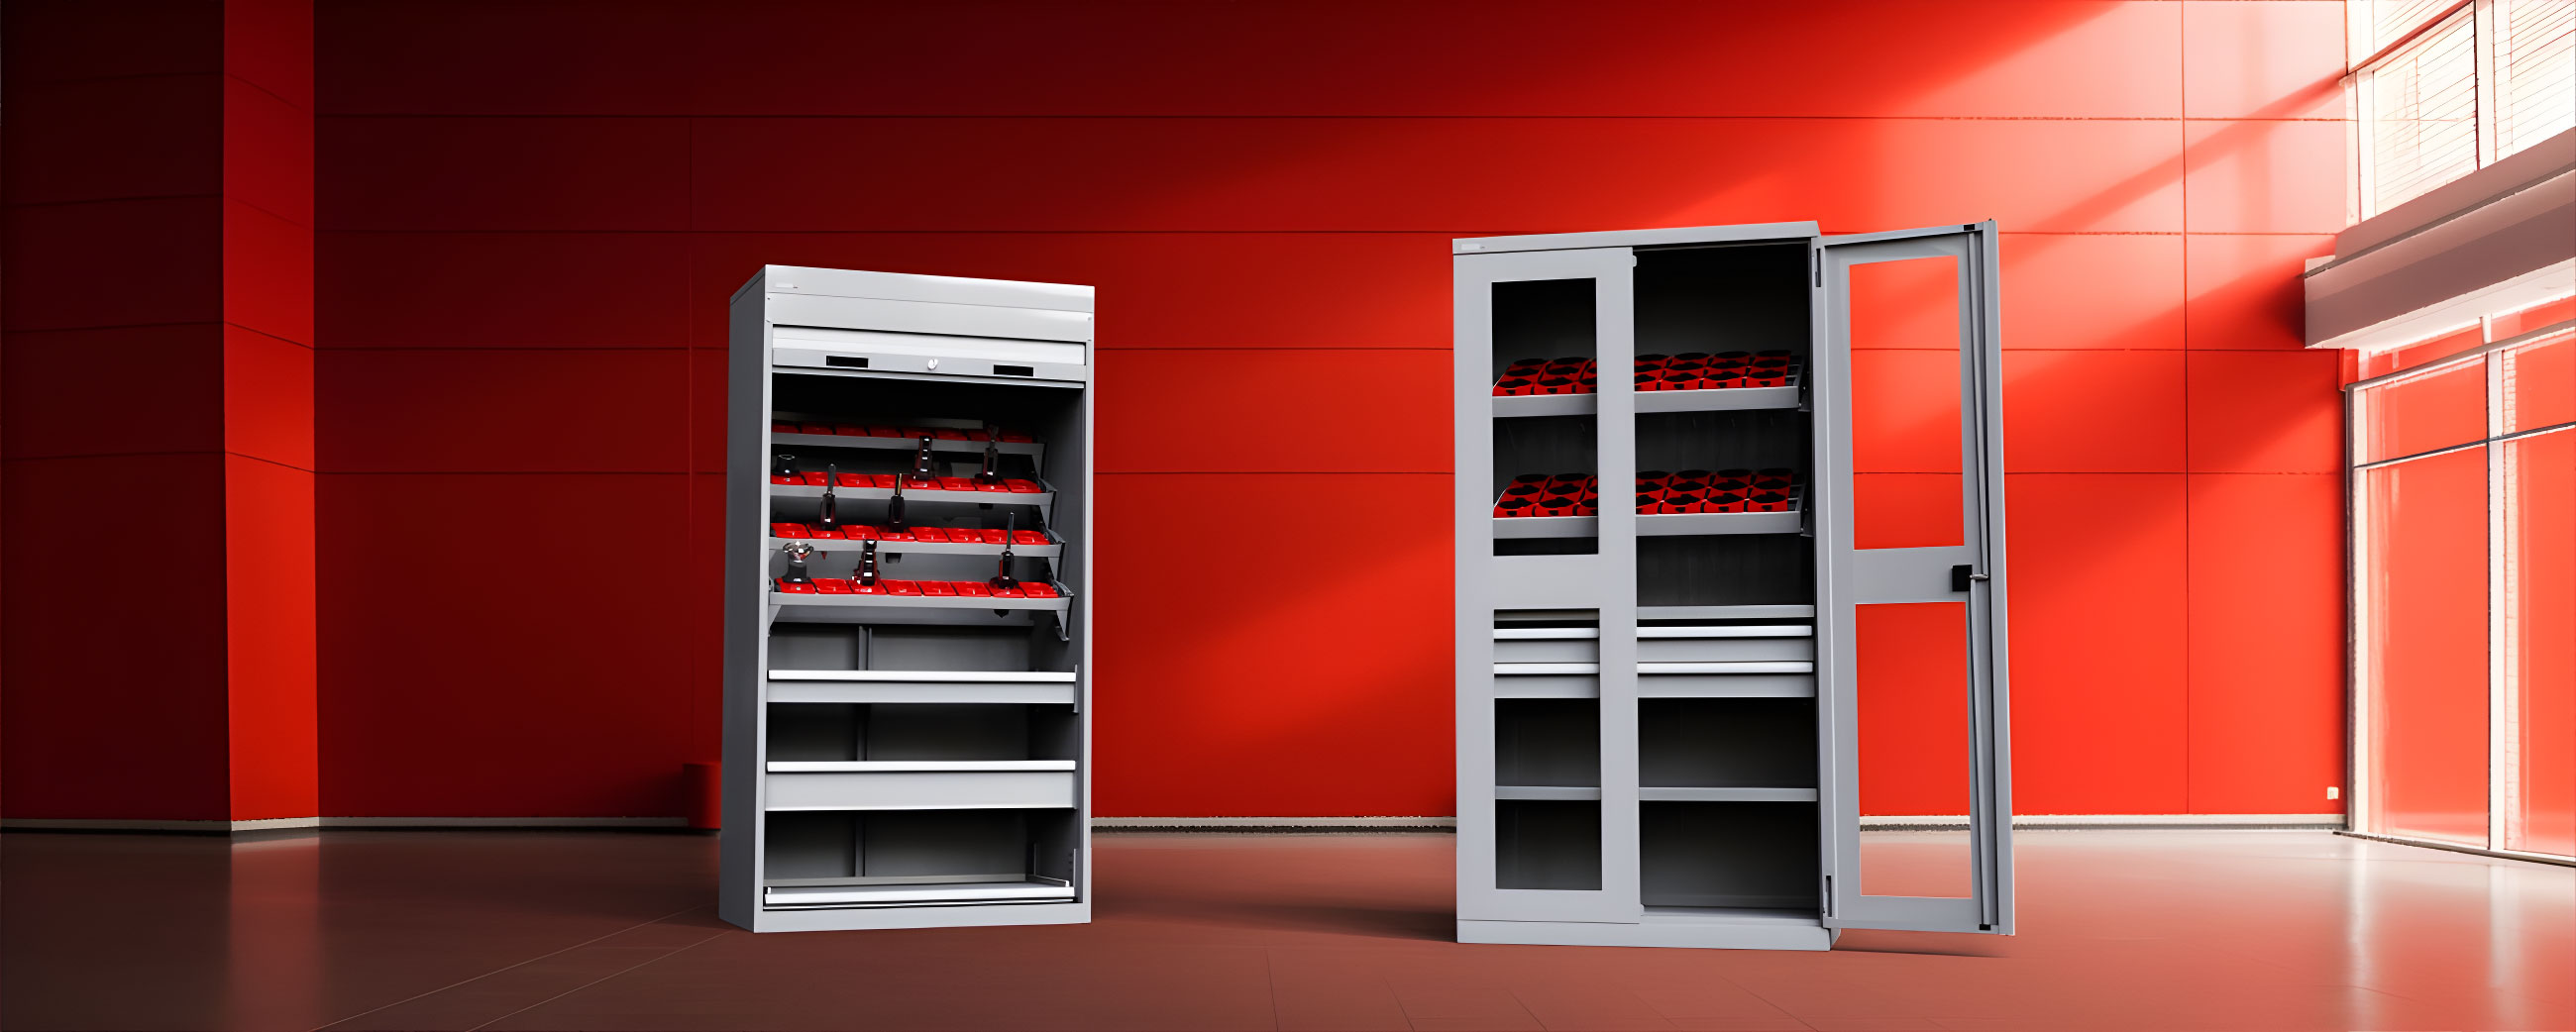 CNC Cabinets